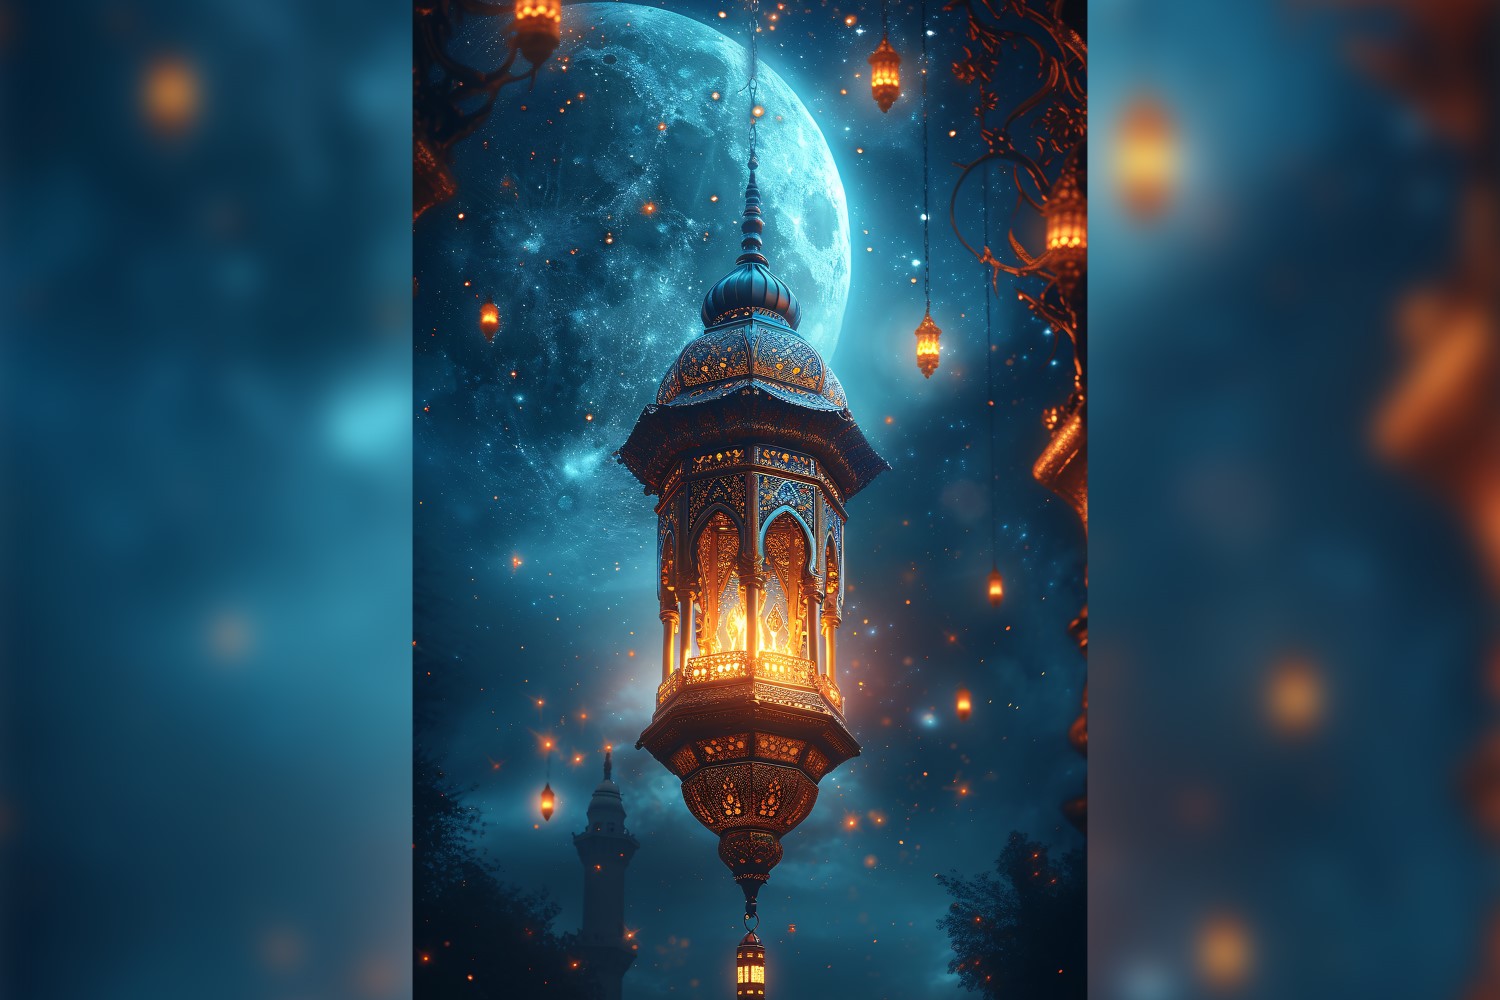 Ramadan Kareem greeting poster design with lanterns & moon